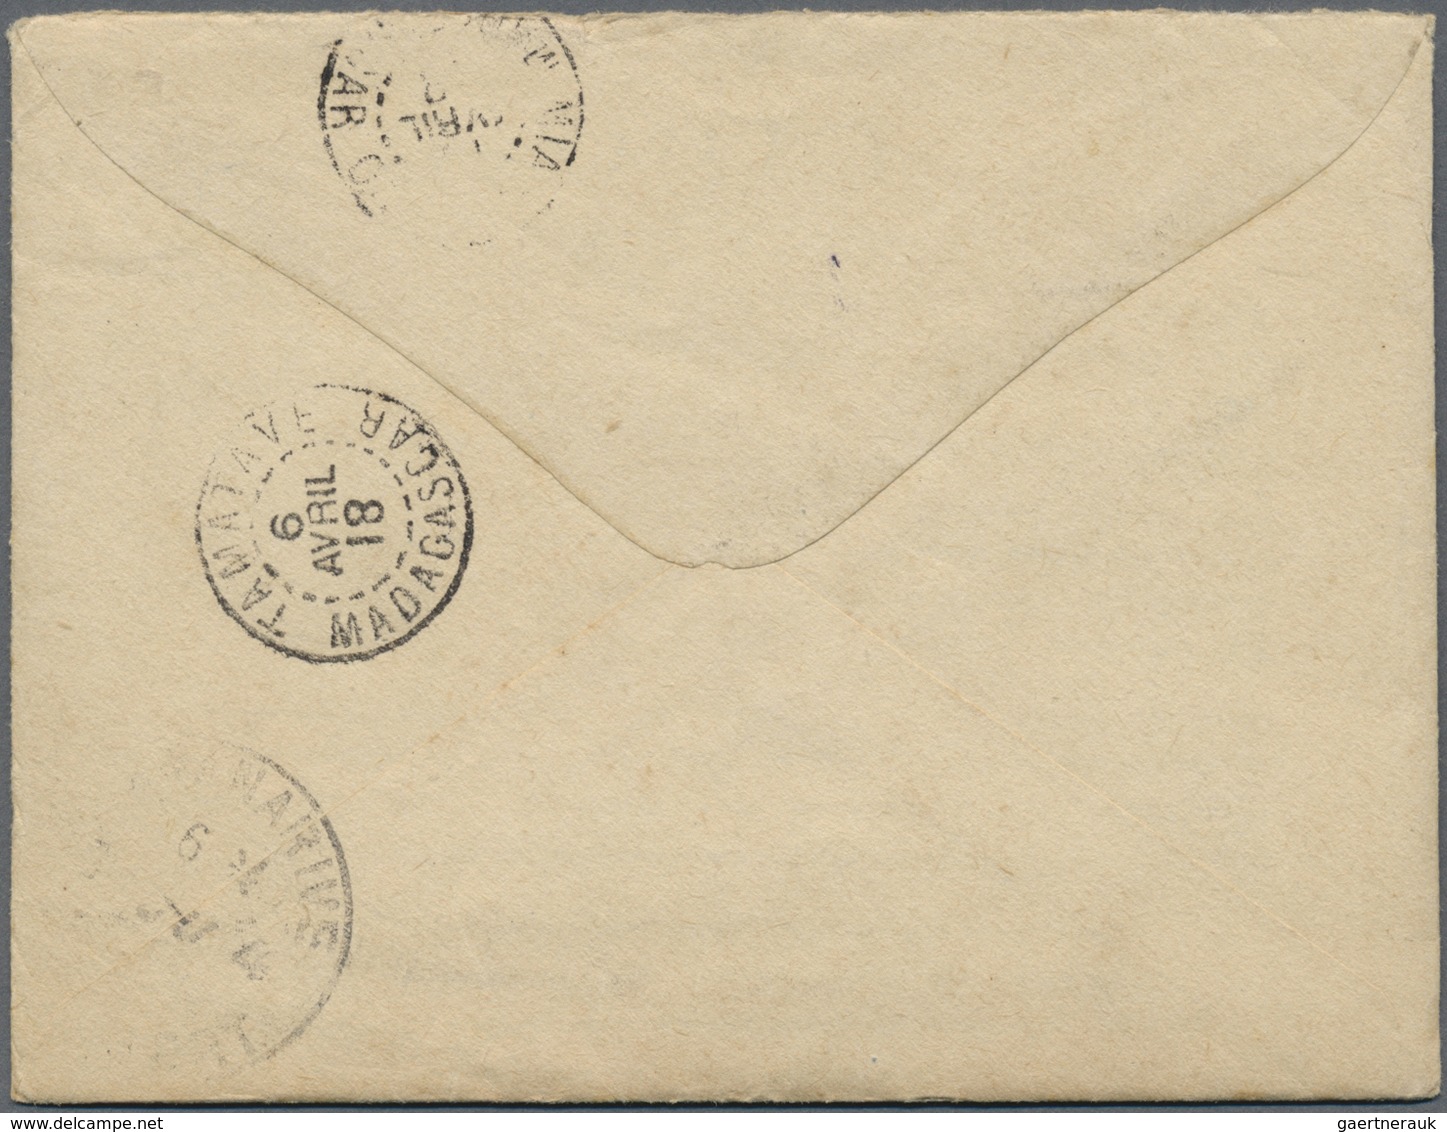 Br Armenien - Besonderheiten: 1918. Illustrated Envelope Written From Port Said Addressed To Madagascar - Arménie